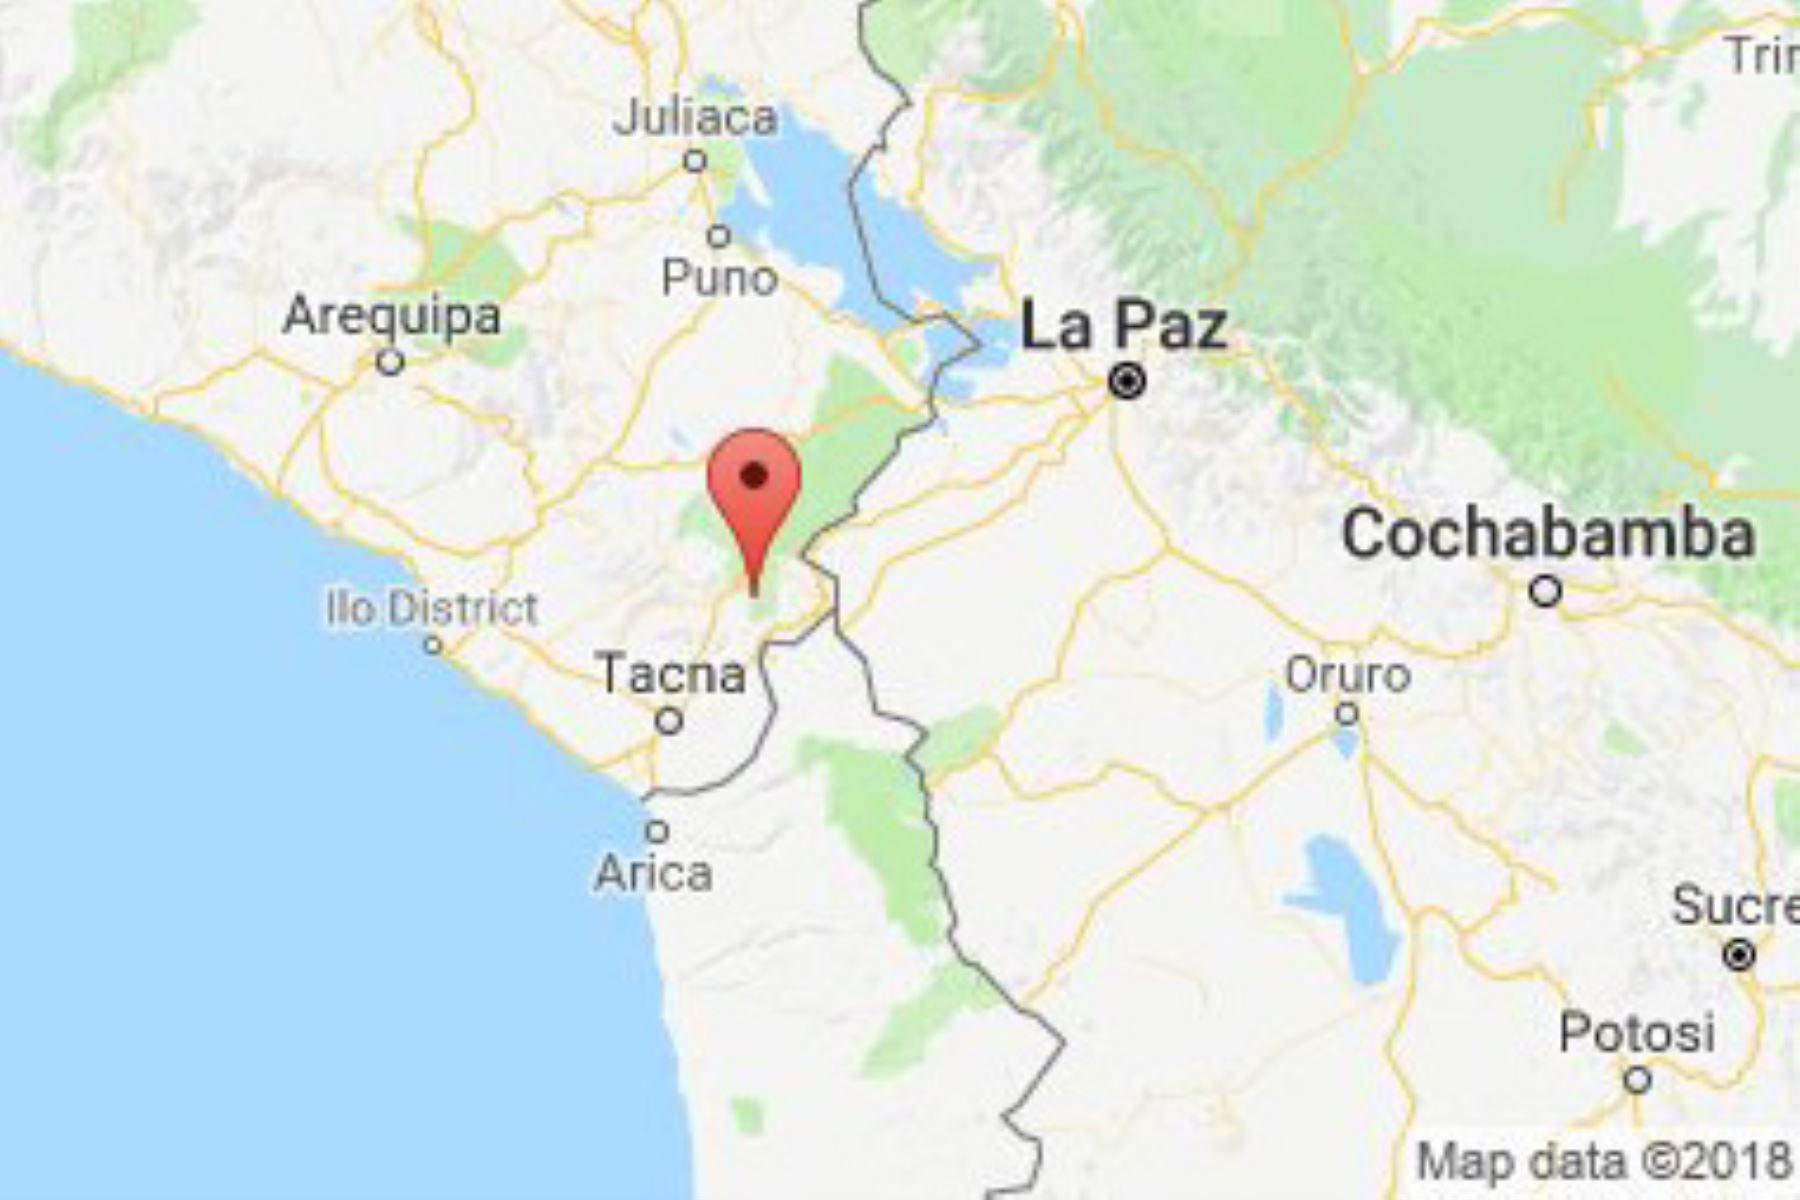 Sismo de 6.3 grados se registró Tacna y sacude el sur del Perú